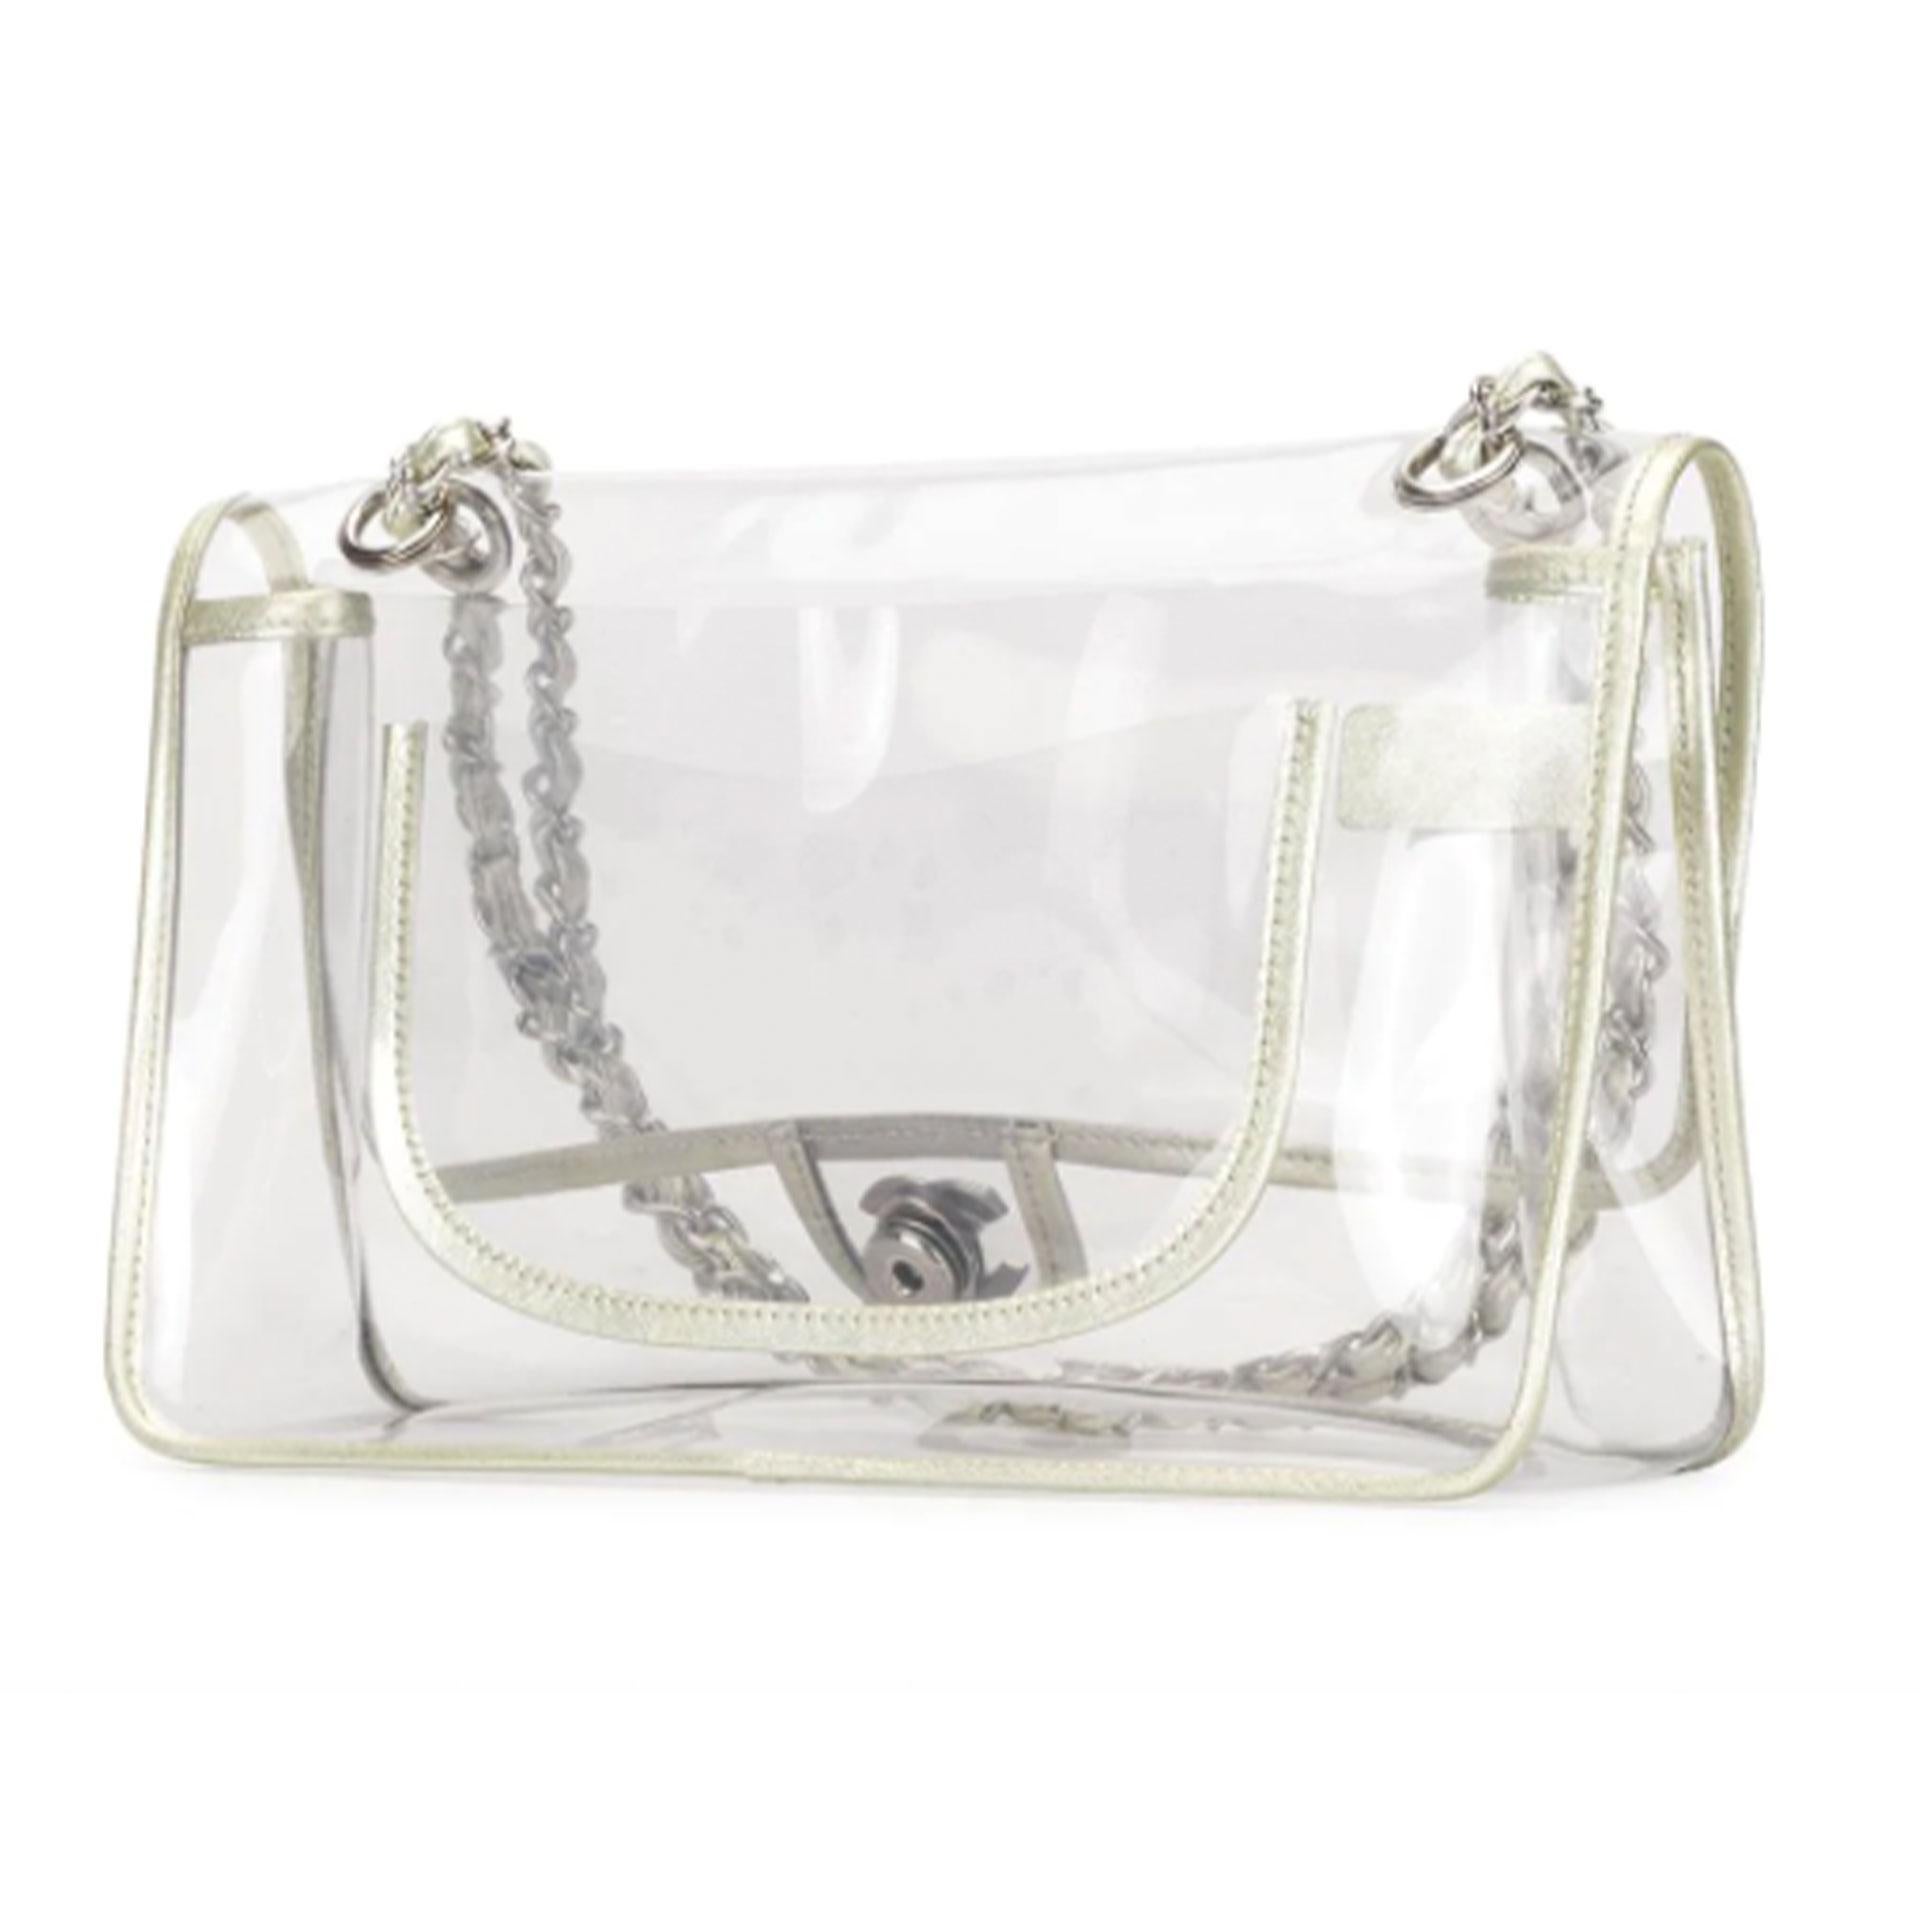 Chanel Transparent Bag - 12 For Sale on 1stDibs